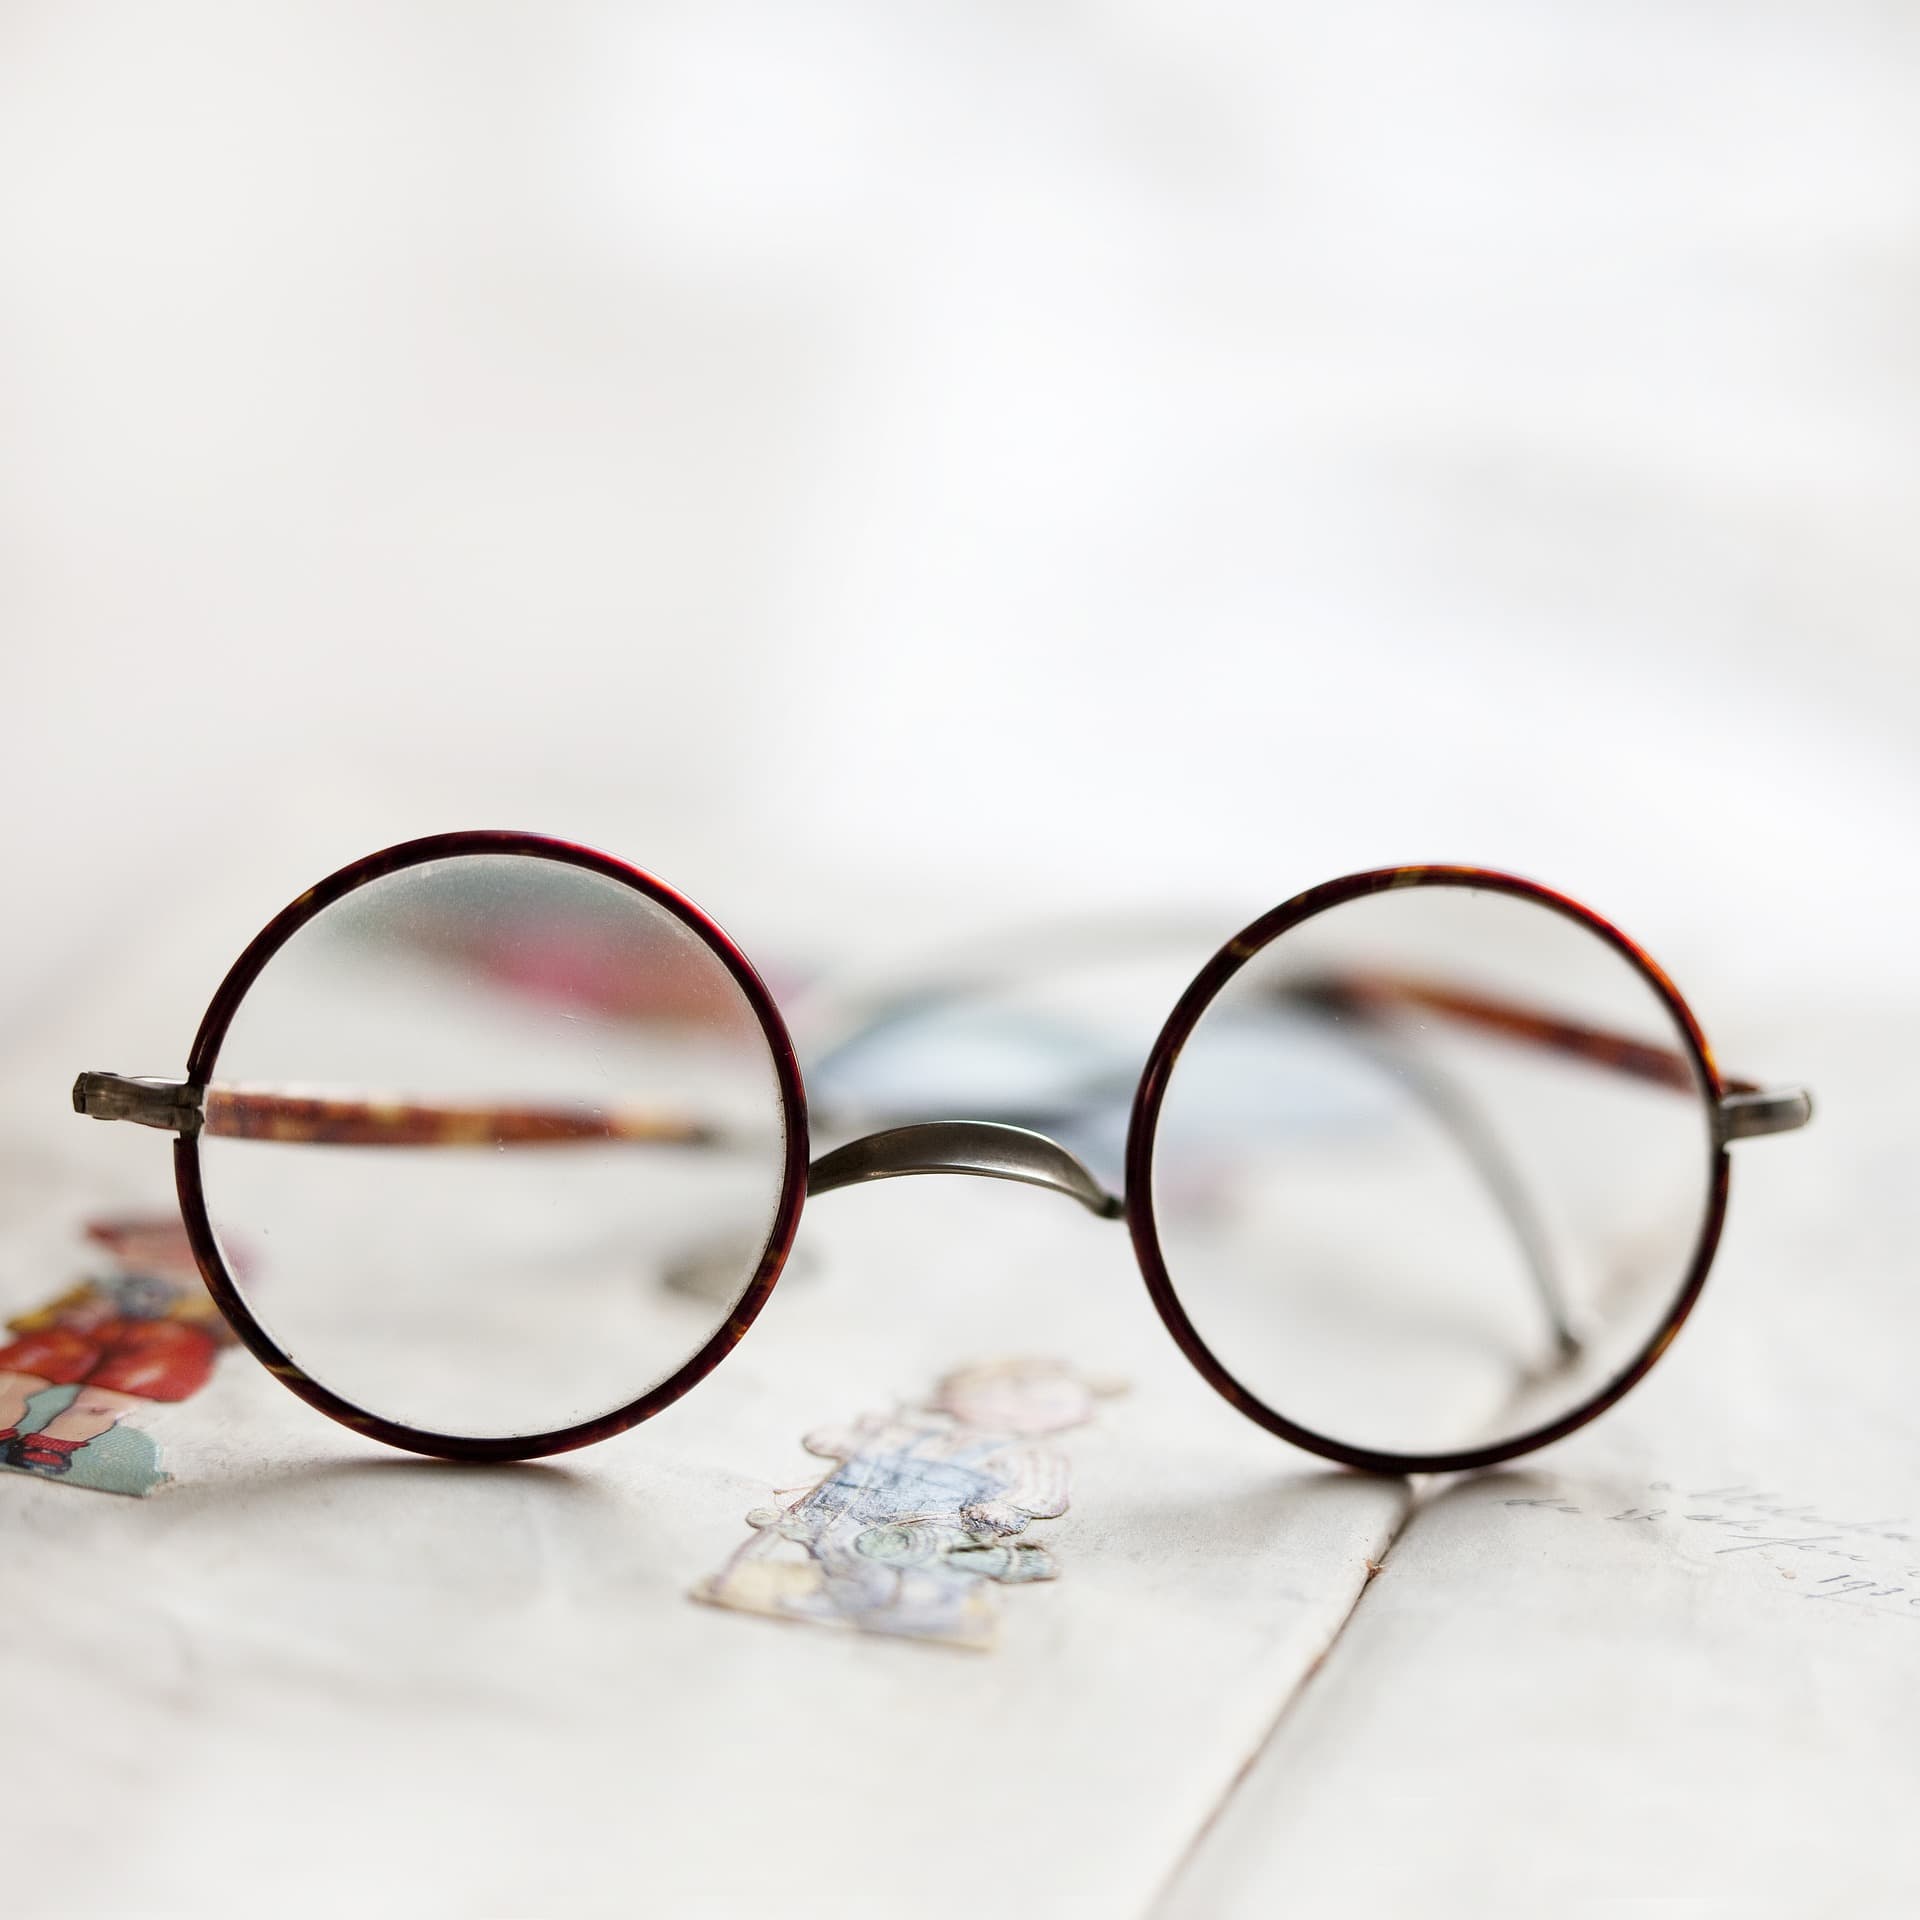 Gleitsichtbrille: Altersweitsichtigkeit – ein natürlicher Prozess